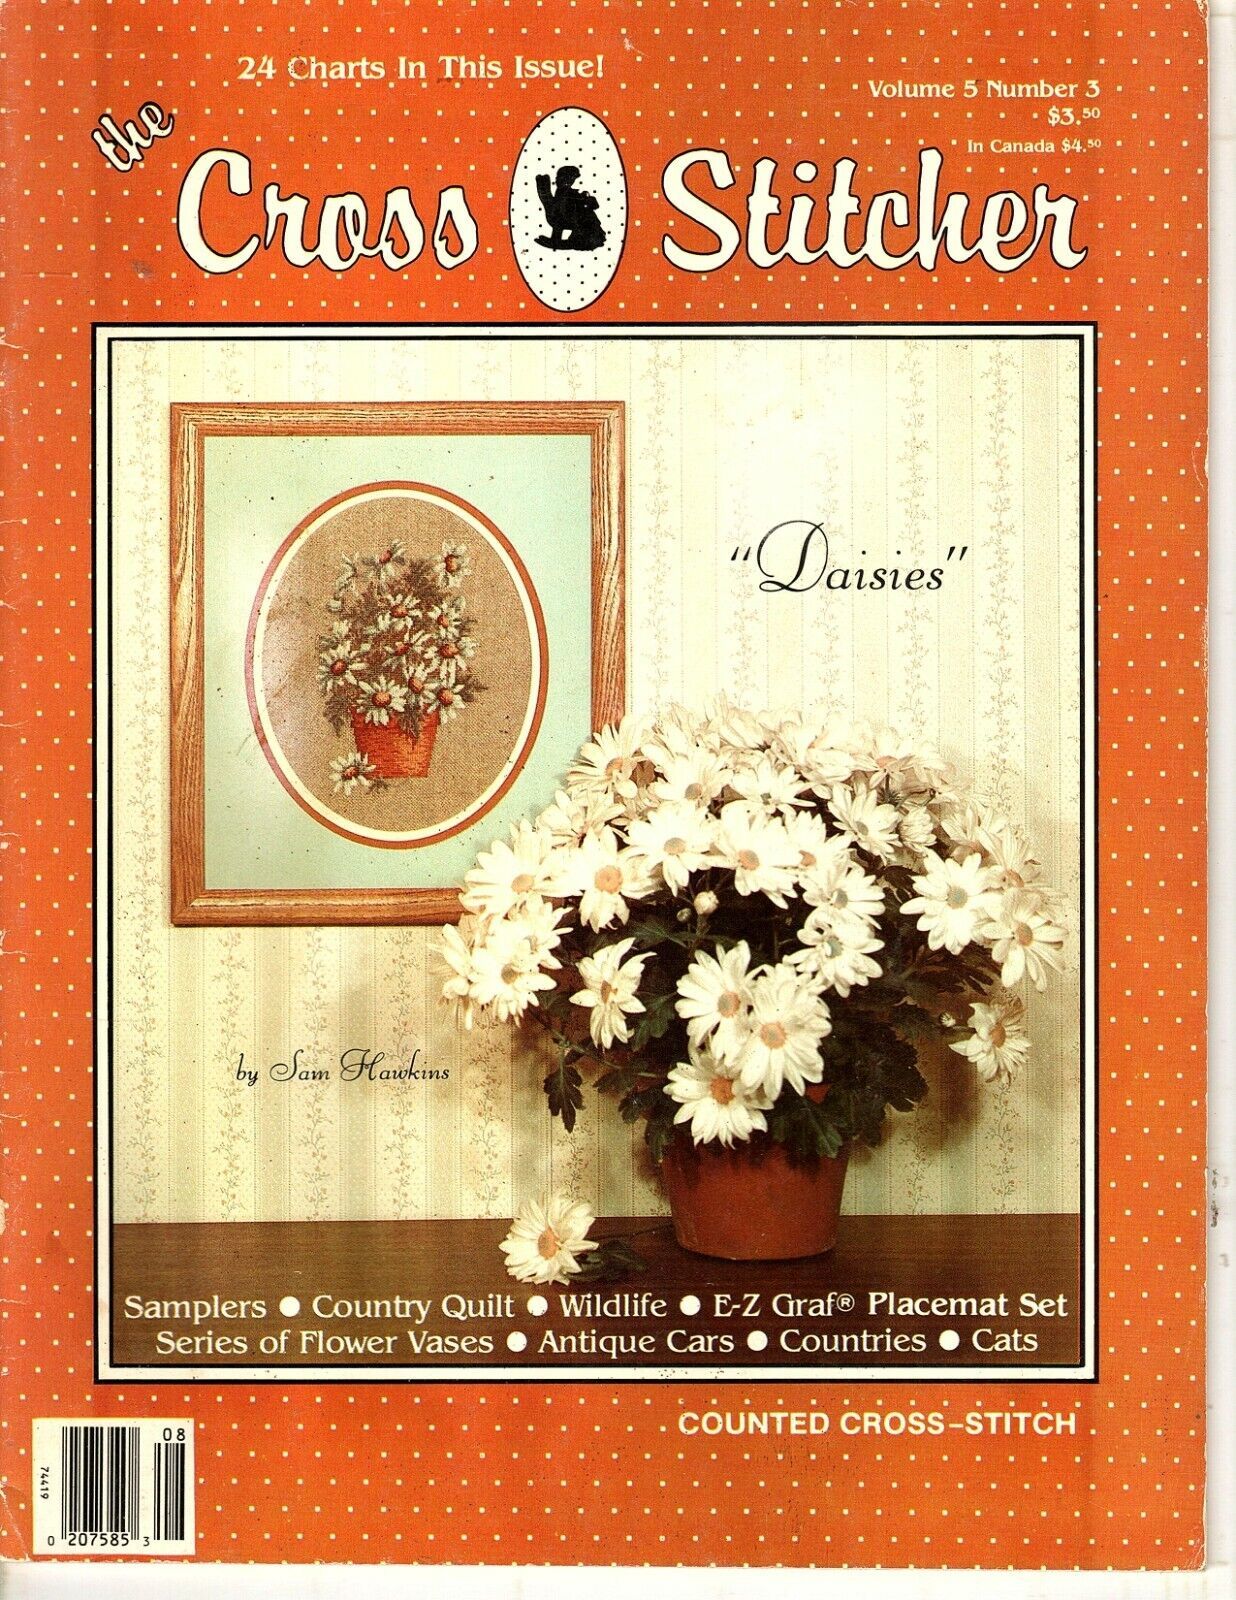 The Cross Stitcher Magazine Counted Cross Stitch Pattern Chart 1988 Vol 5 #3 - $5.01